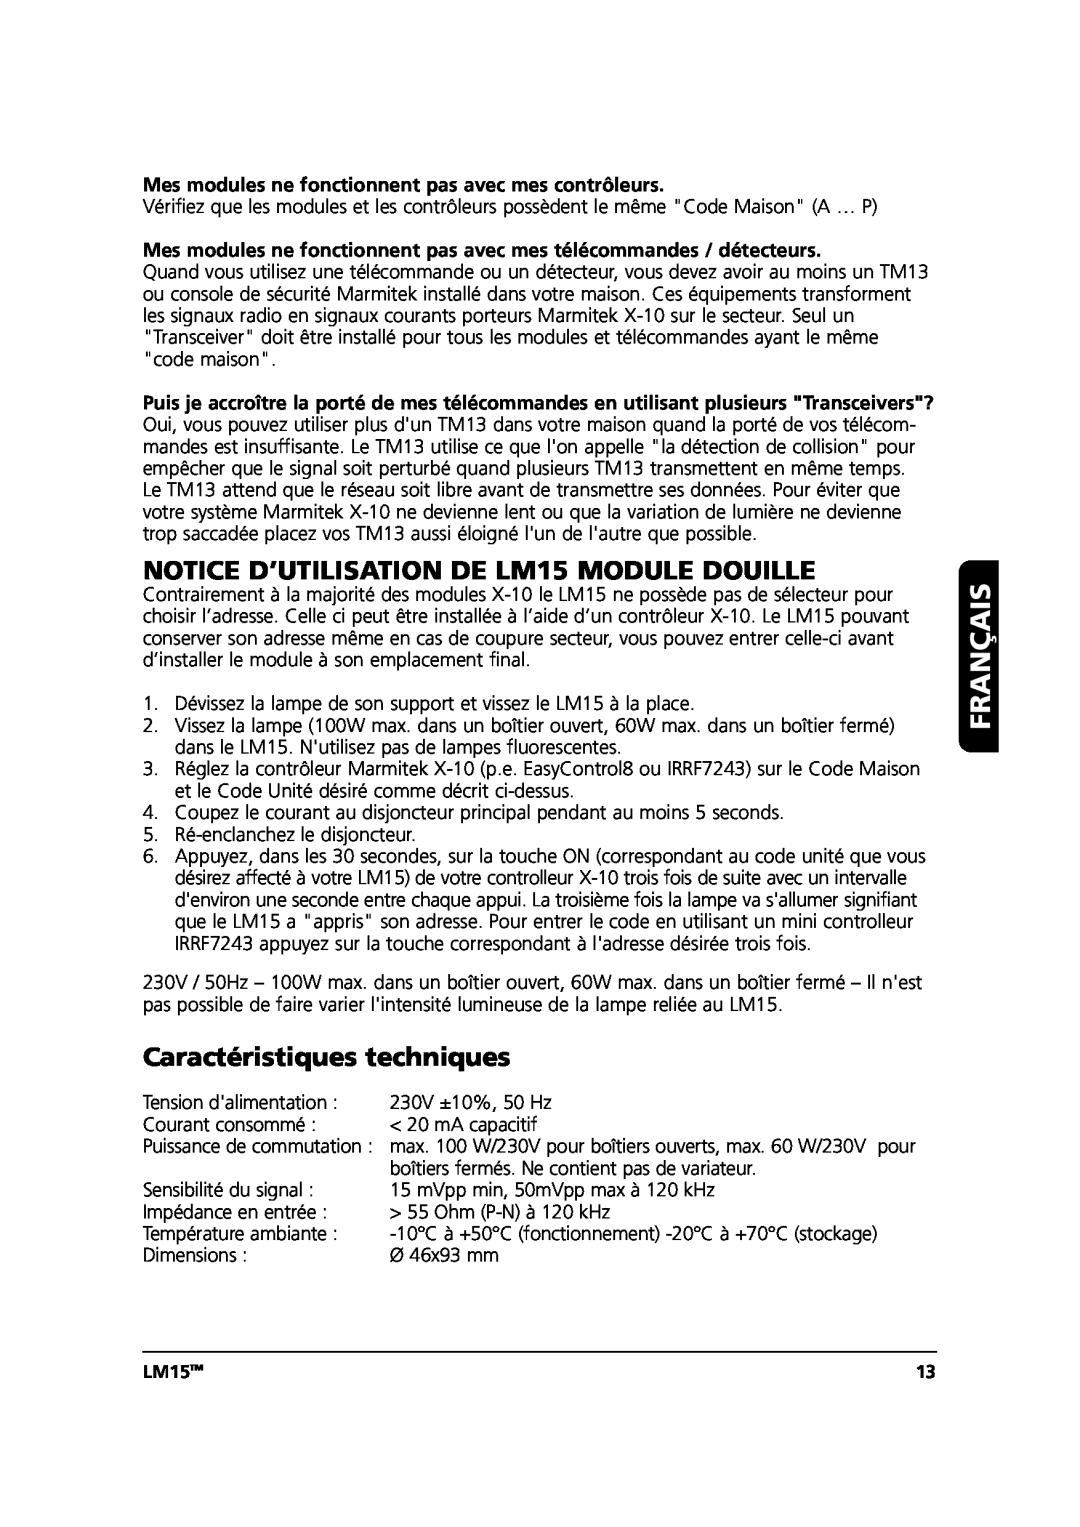 Marmitek user manual NOTICE D’UTILISATION DE LM15 MODULE DOUILLE, Caractéristiques techniques, Français, LM15TM 